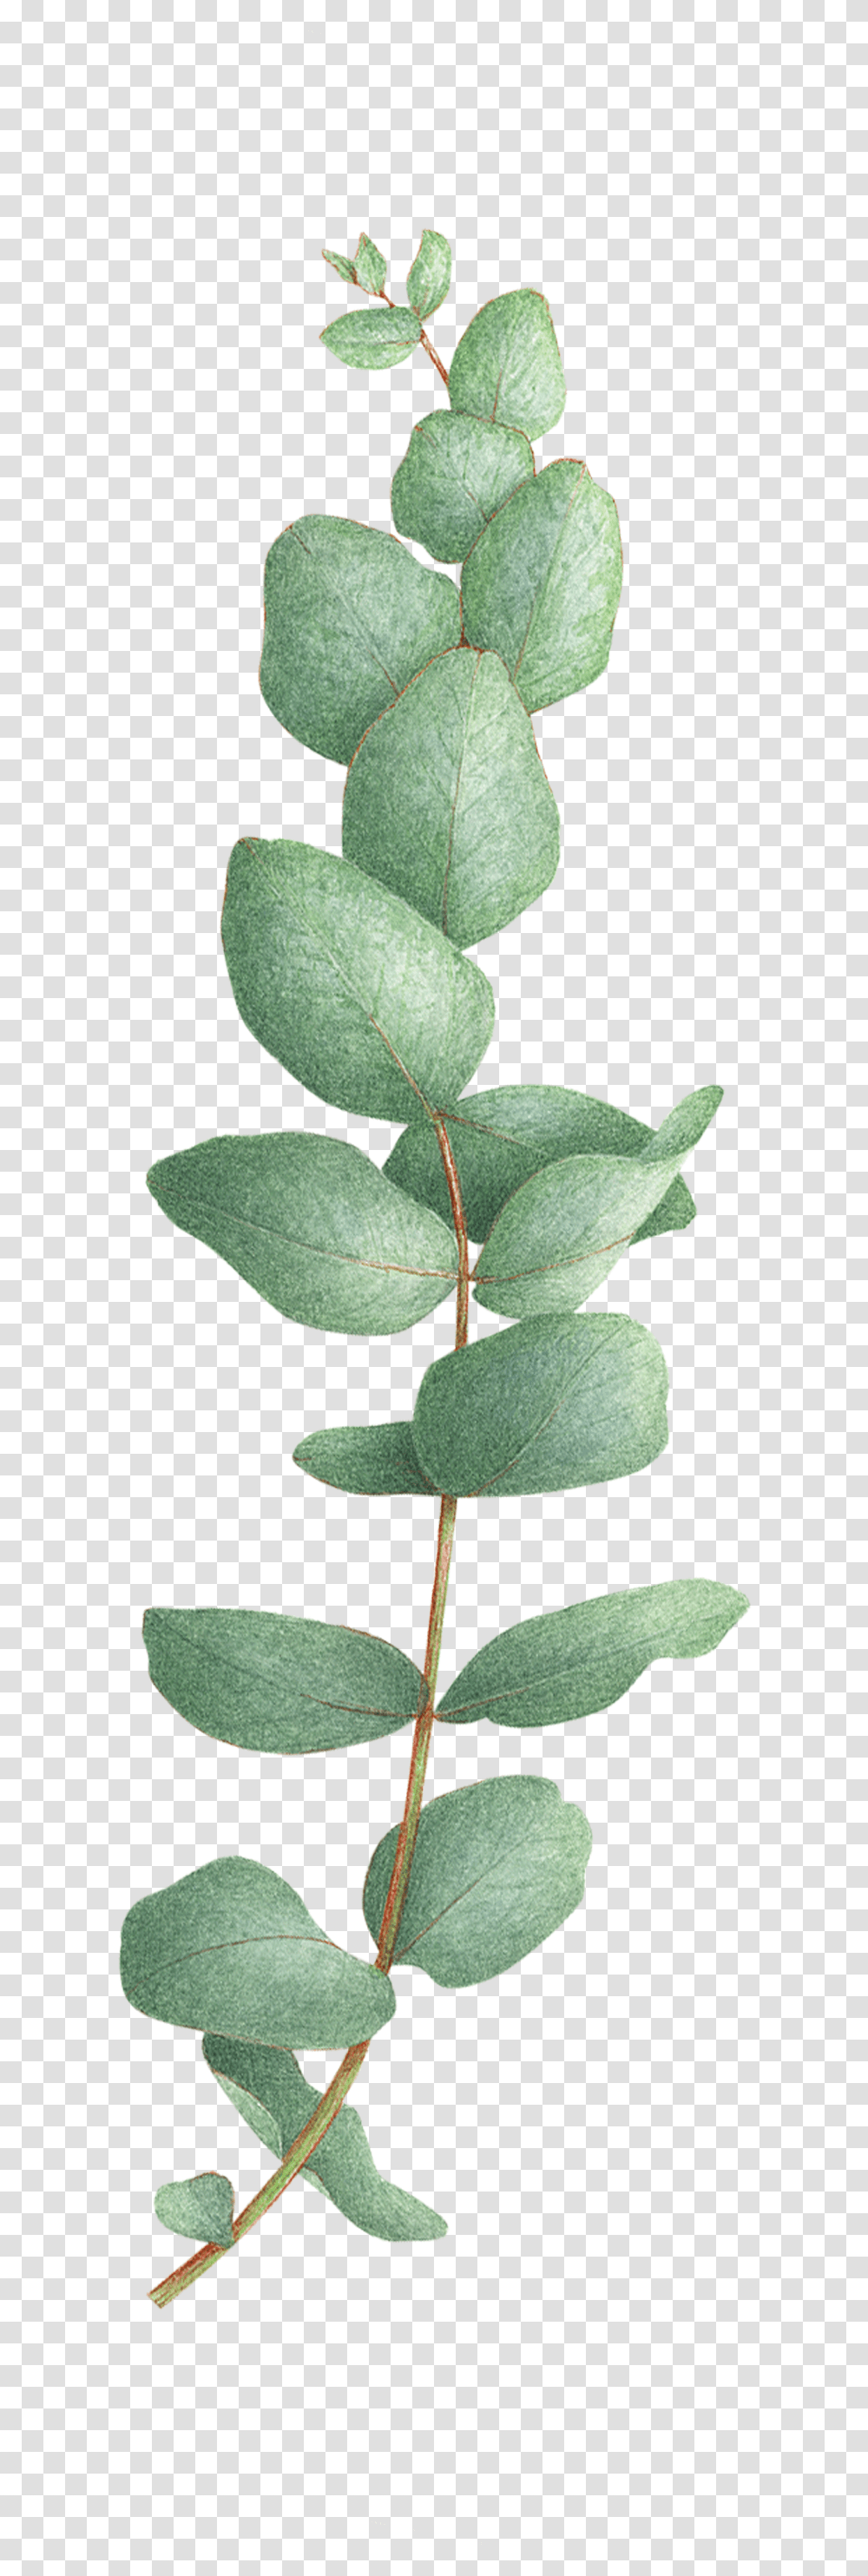 Eucalyptus Tree Eucalyptus Tattoo, Leaf, Plant, Flower, Blossom Transparent Png